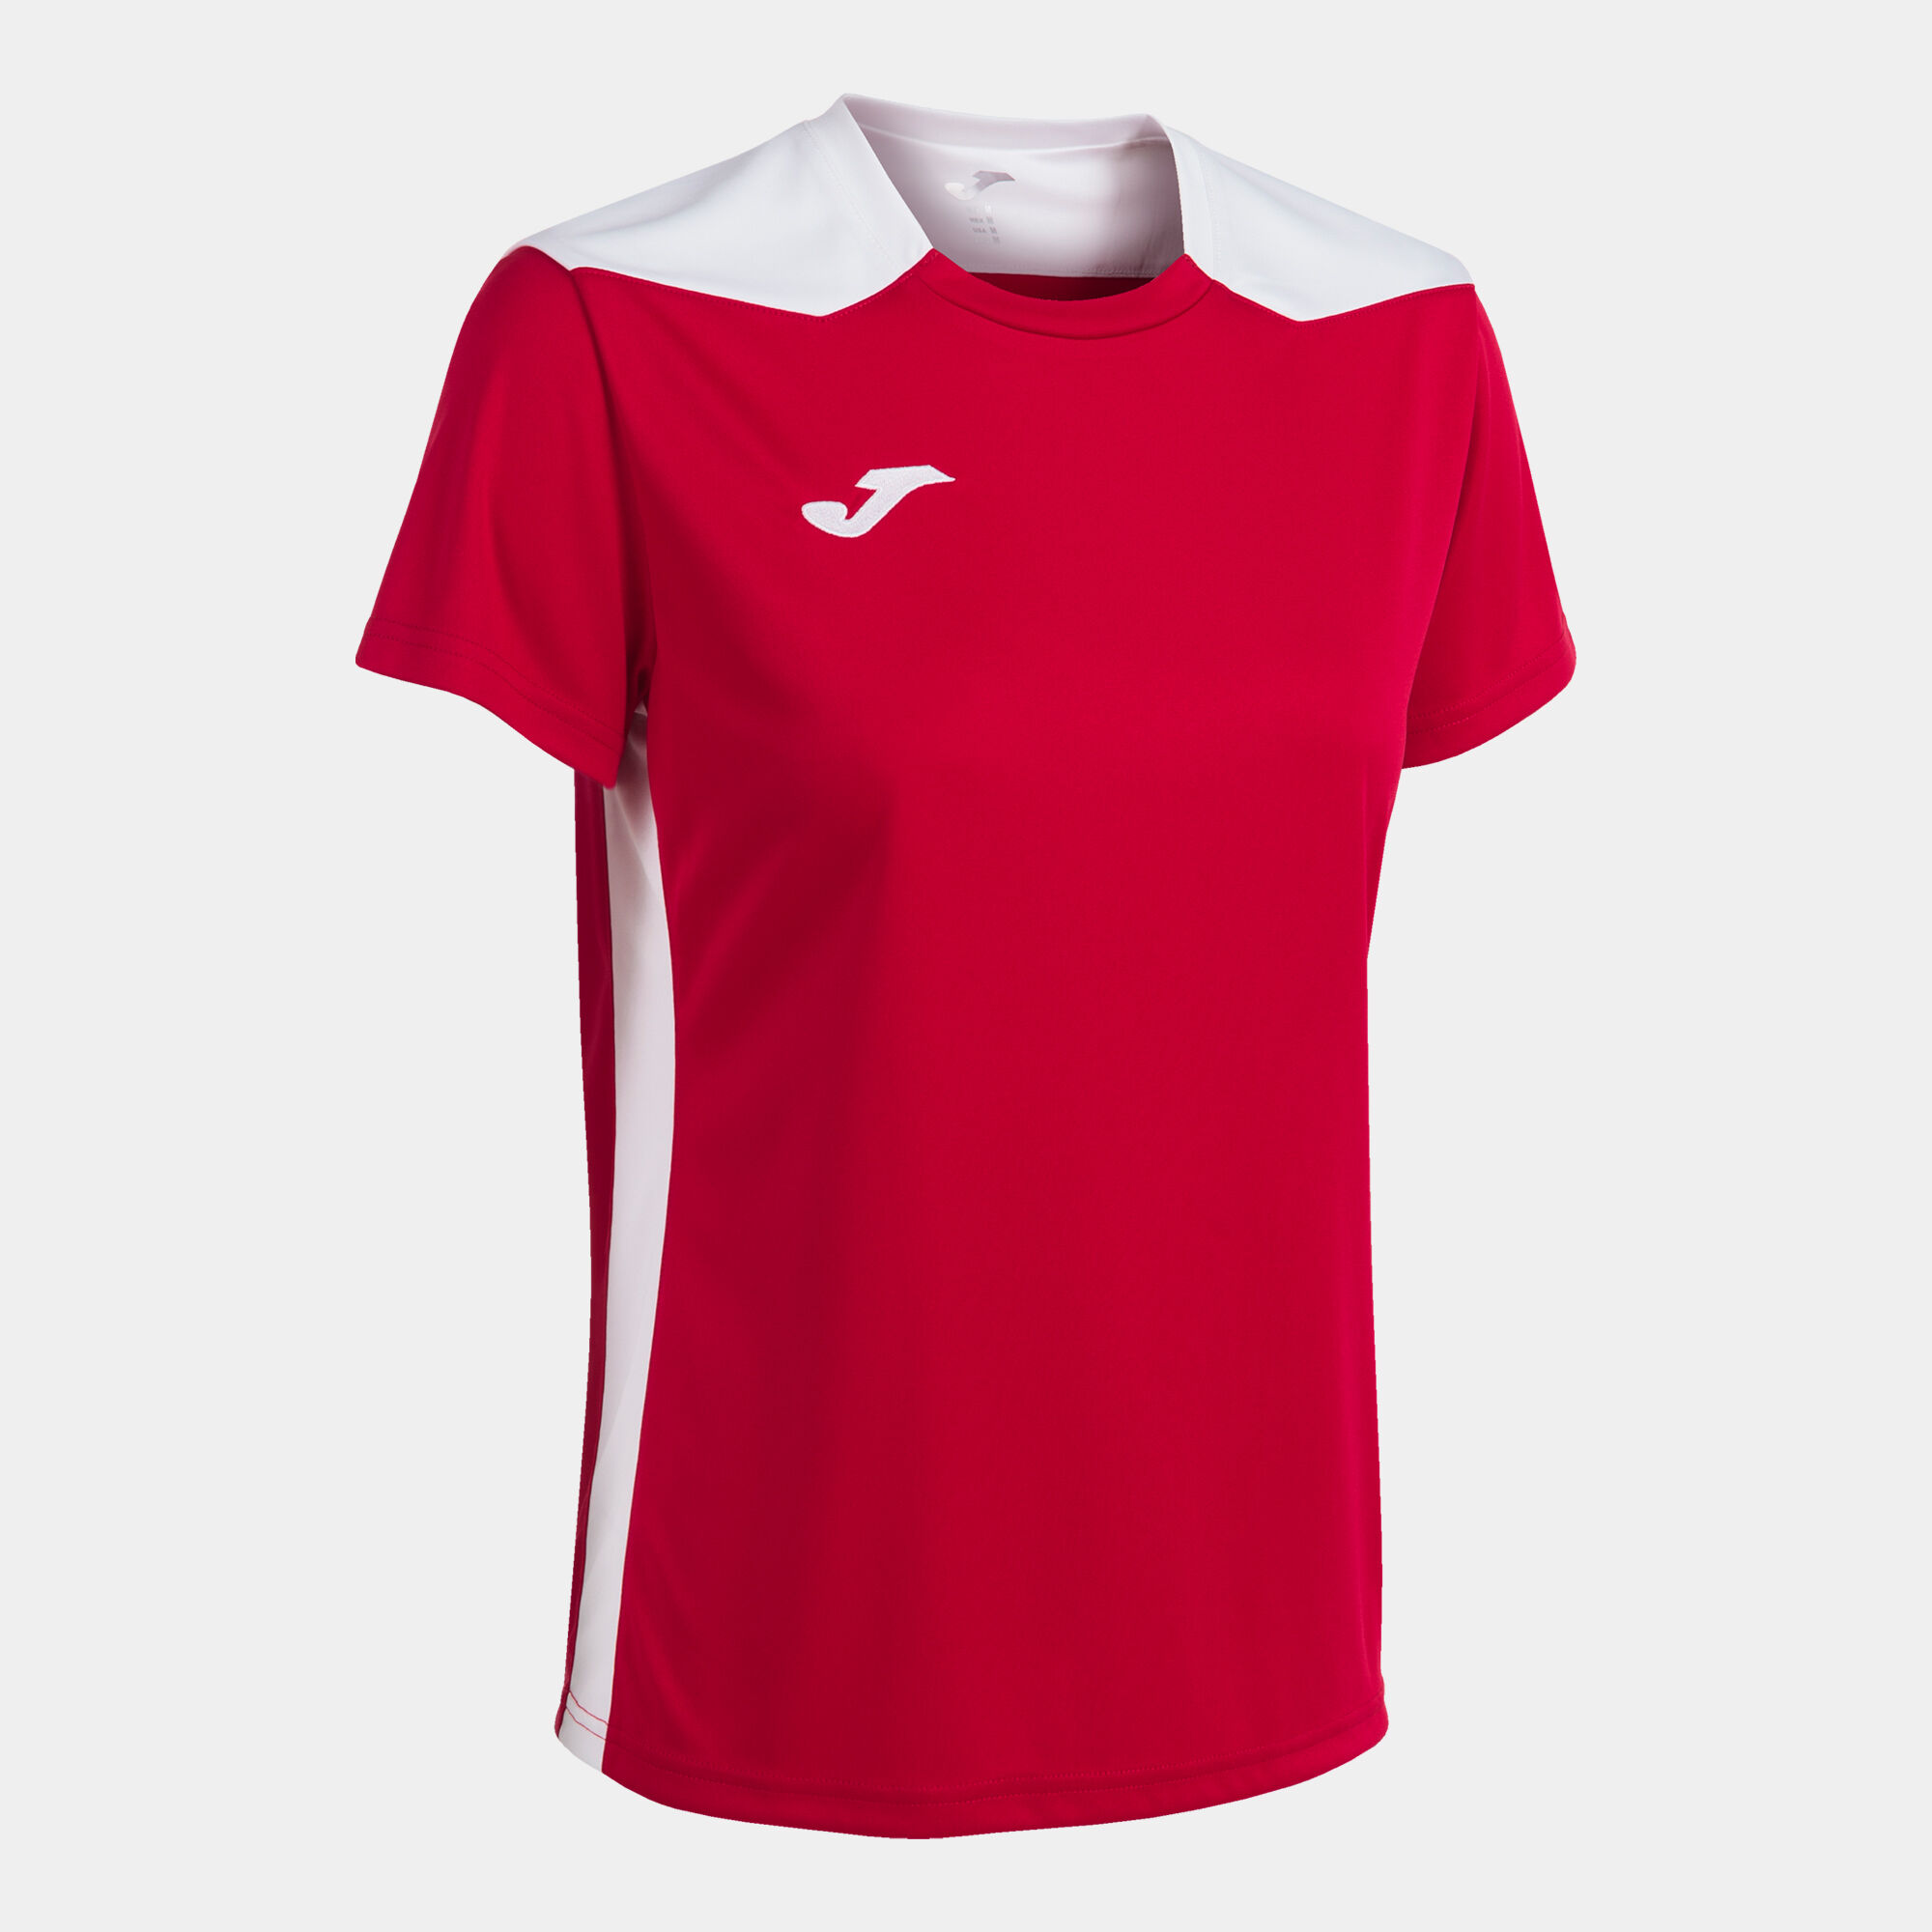 Camiseta manga corta mujer Championship VI rojo blanco